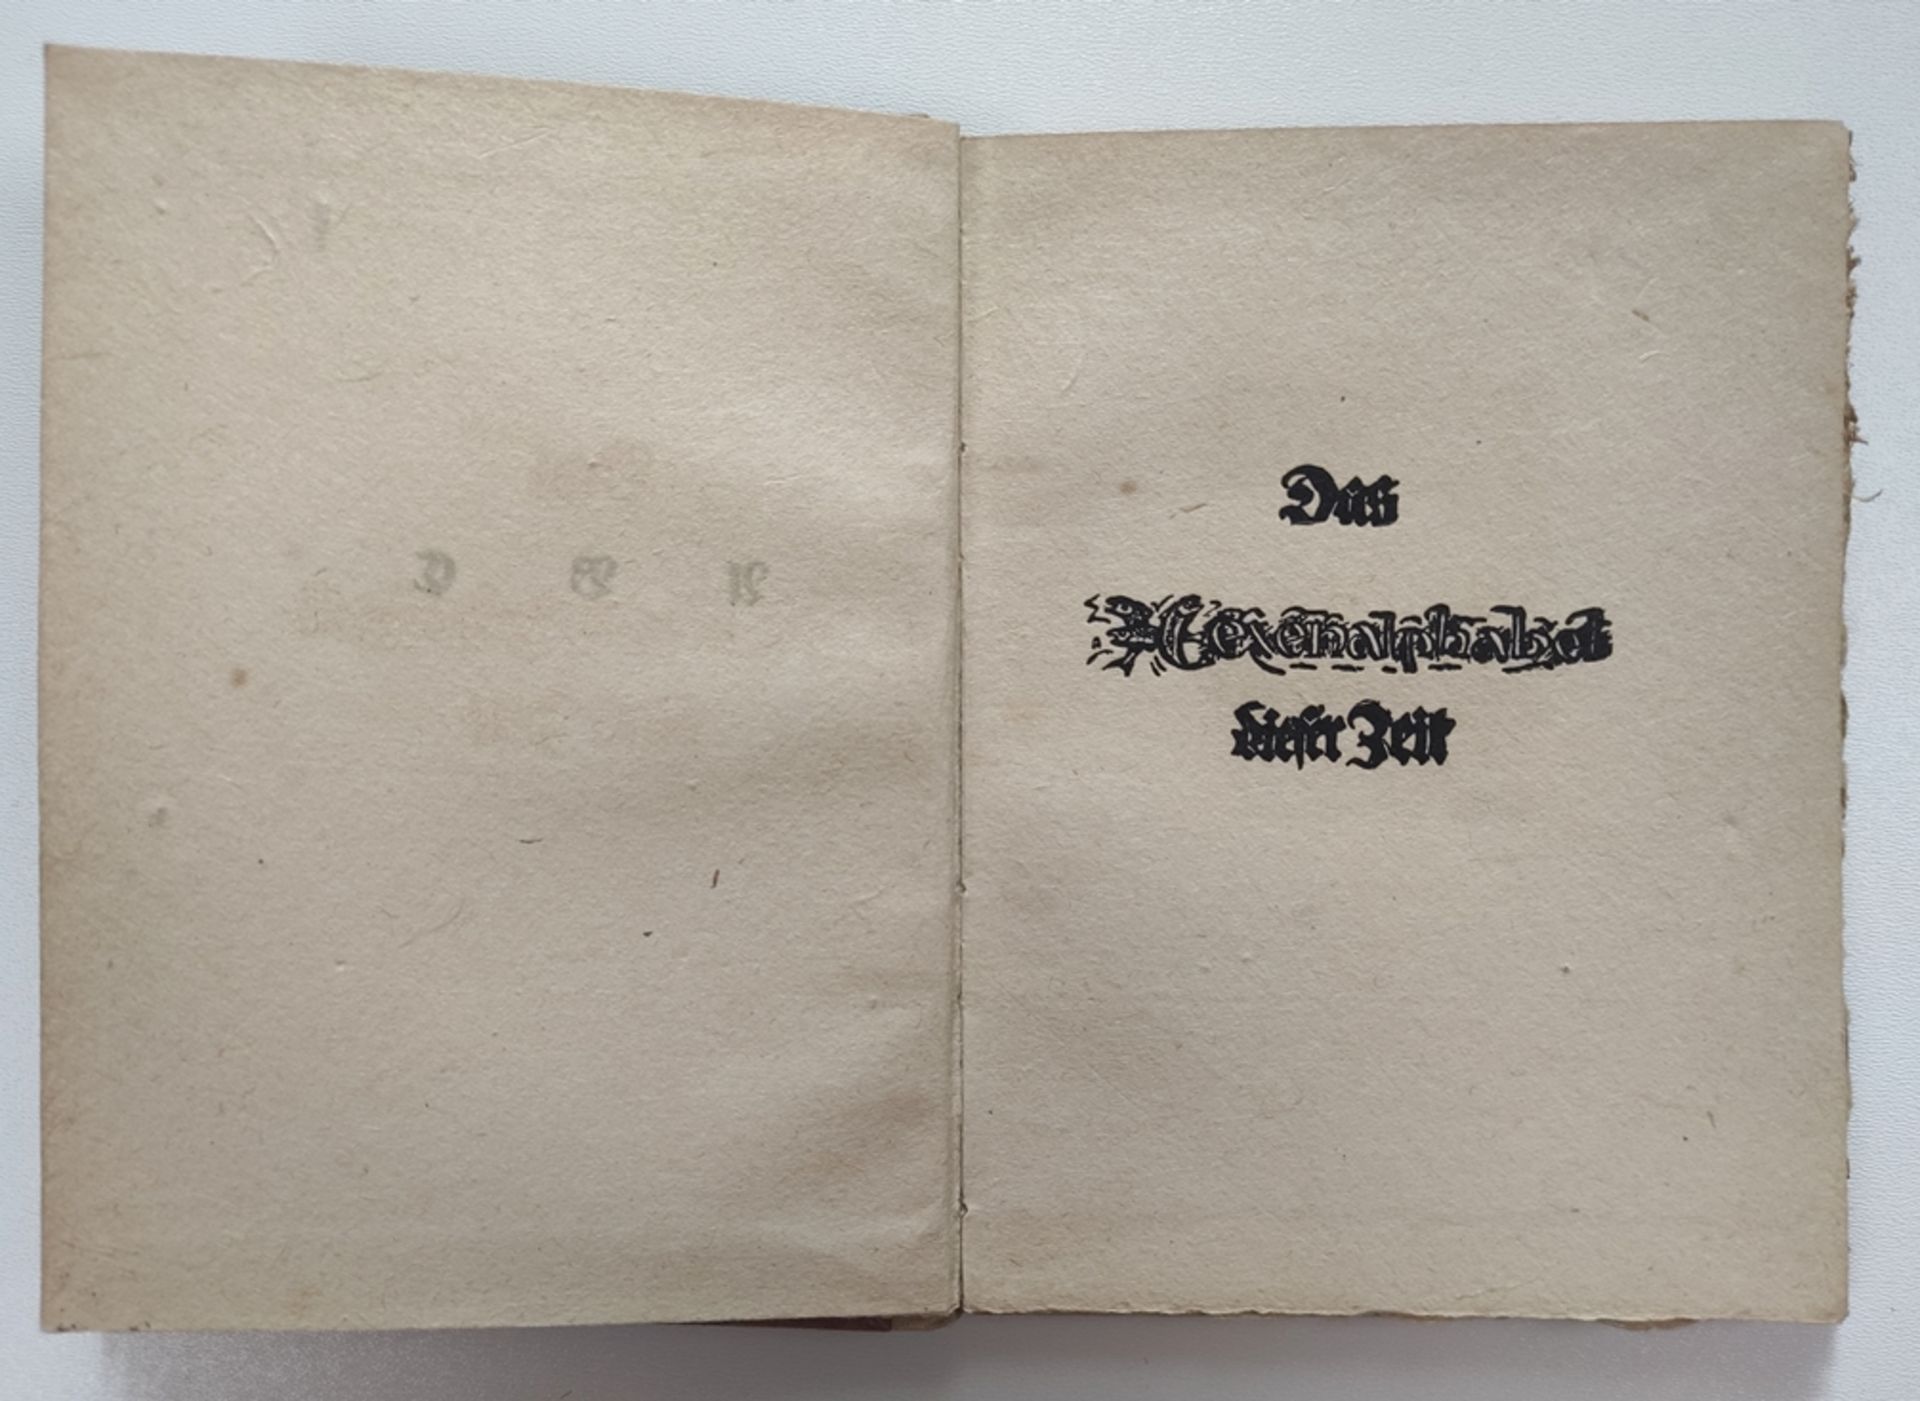 Wolf, Gustav "Das Hexenalphabet dieser Zeit", privately printed, 1930, small 8°, 28 pages, hand-pri